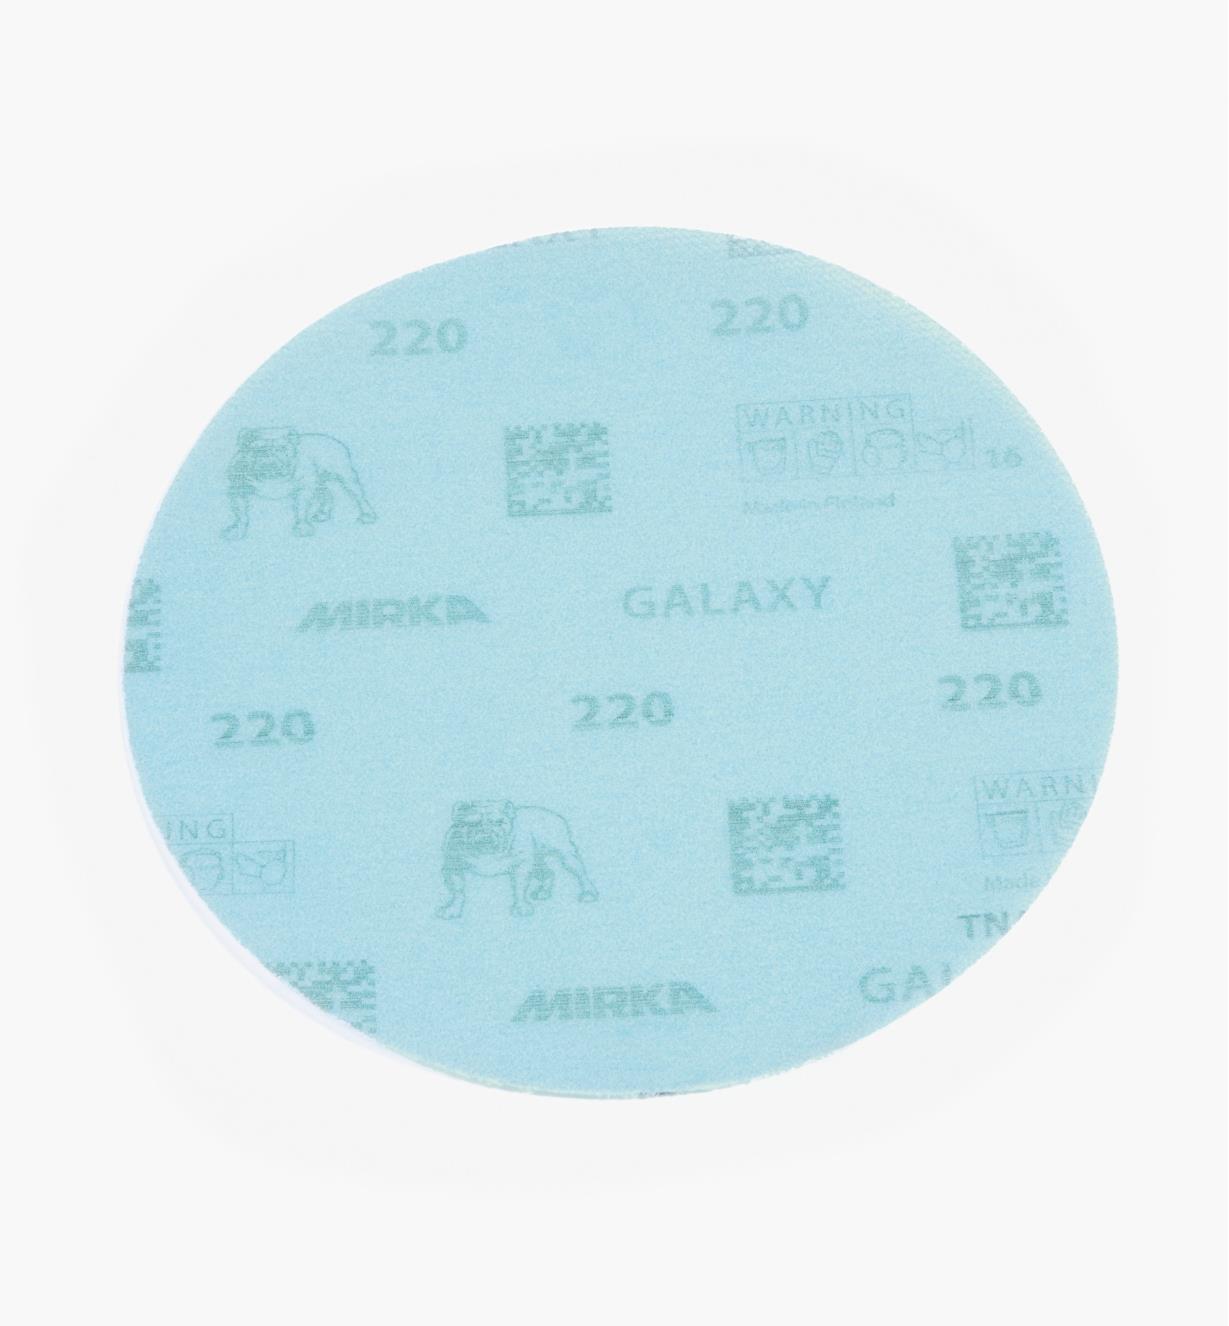 08K2108 - 220x 6" Galaxy Grip Disc, ea.